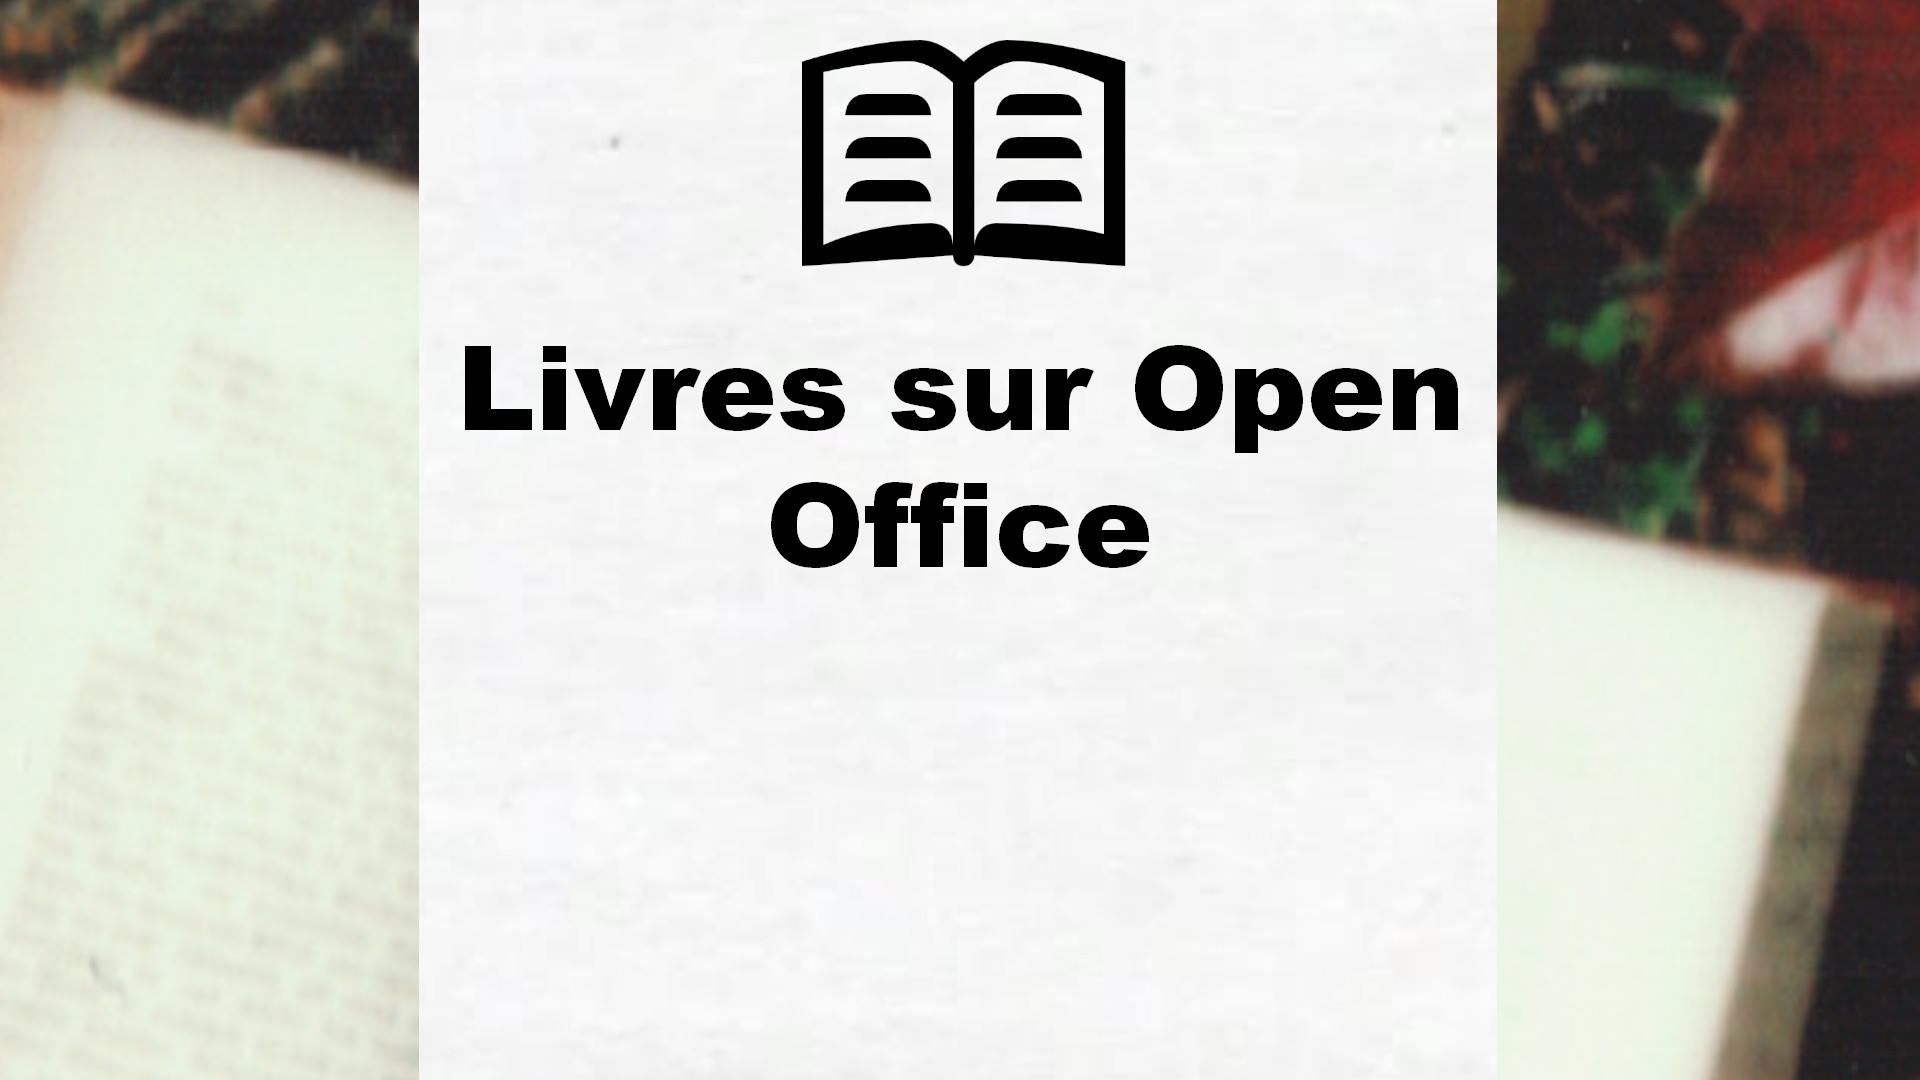 Livres sur Open Office